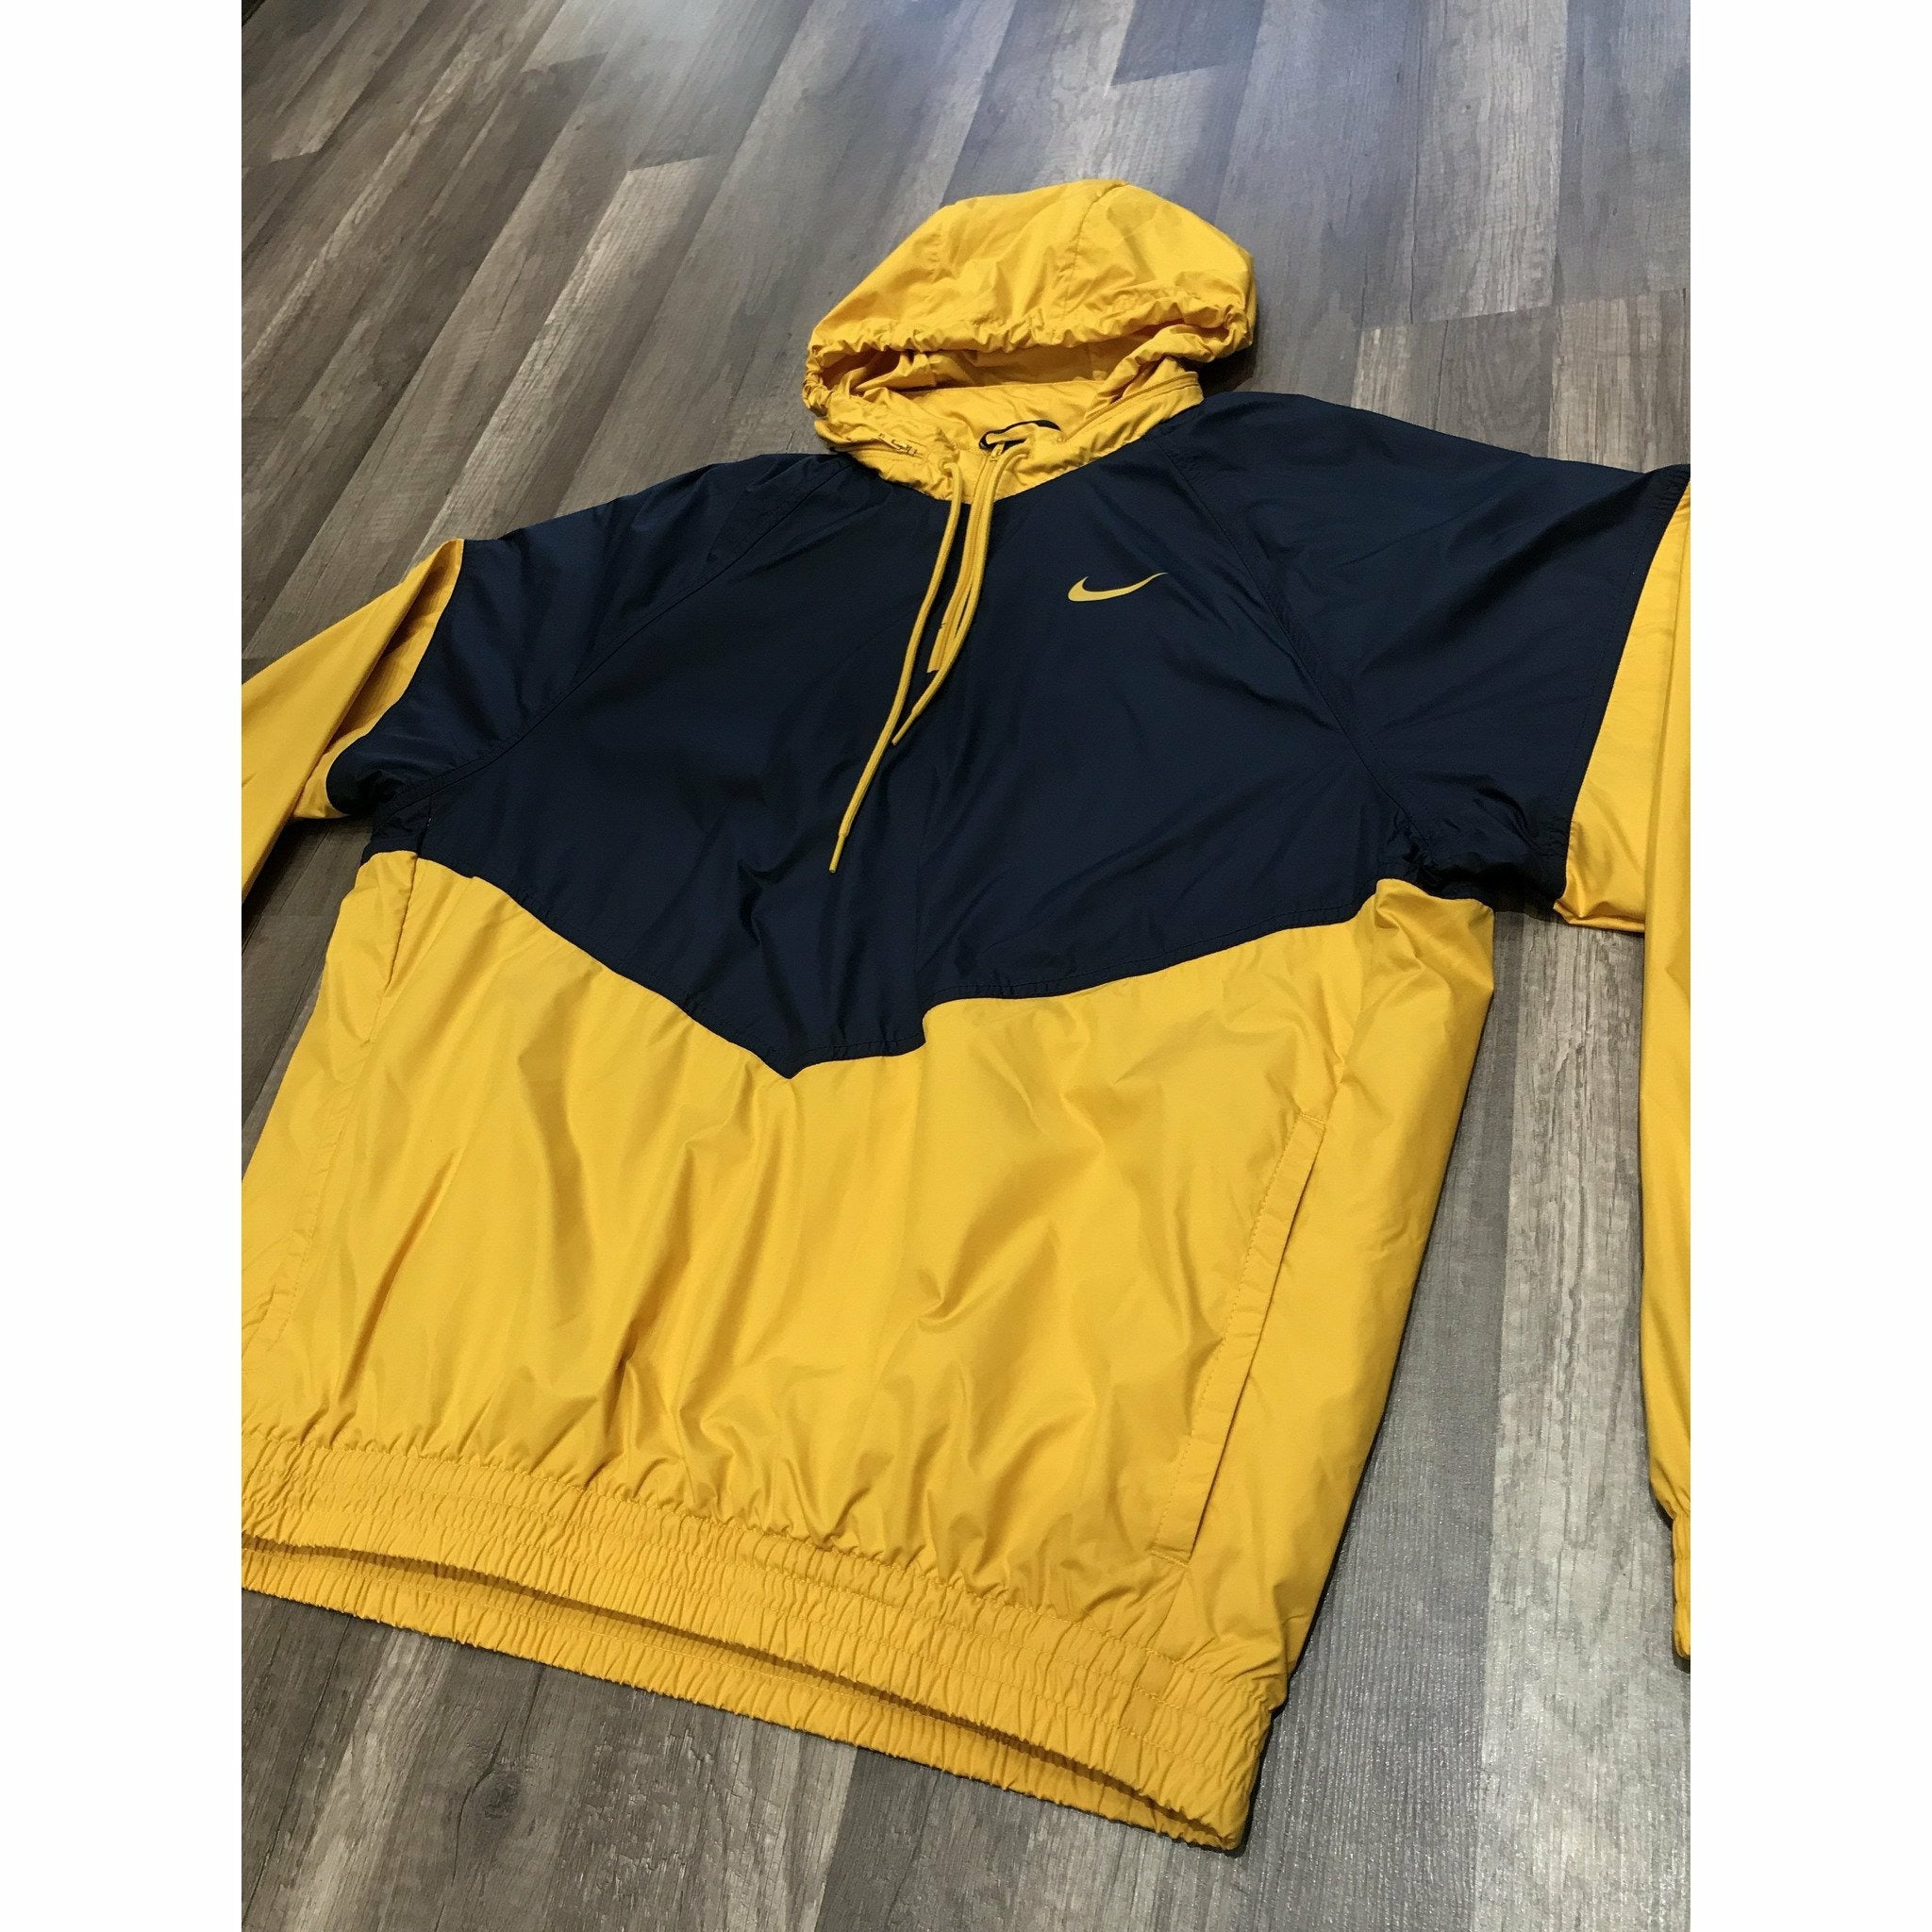 Nike SB Blue/Yellow Track Jacket 